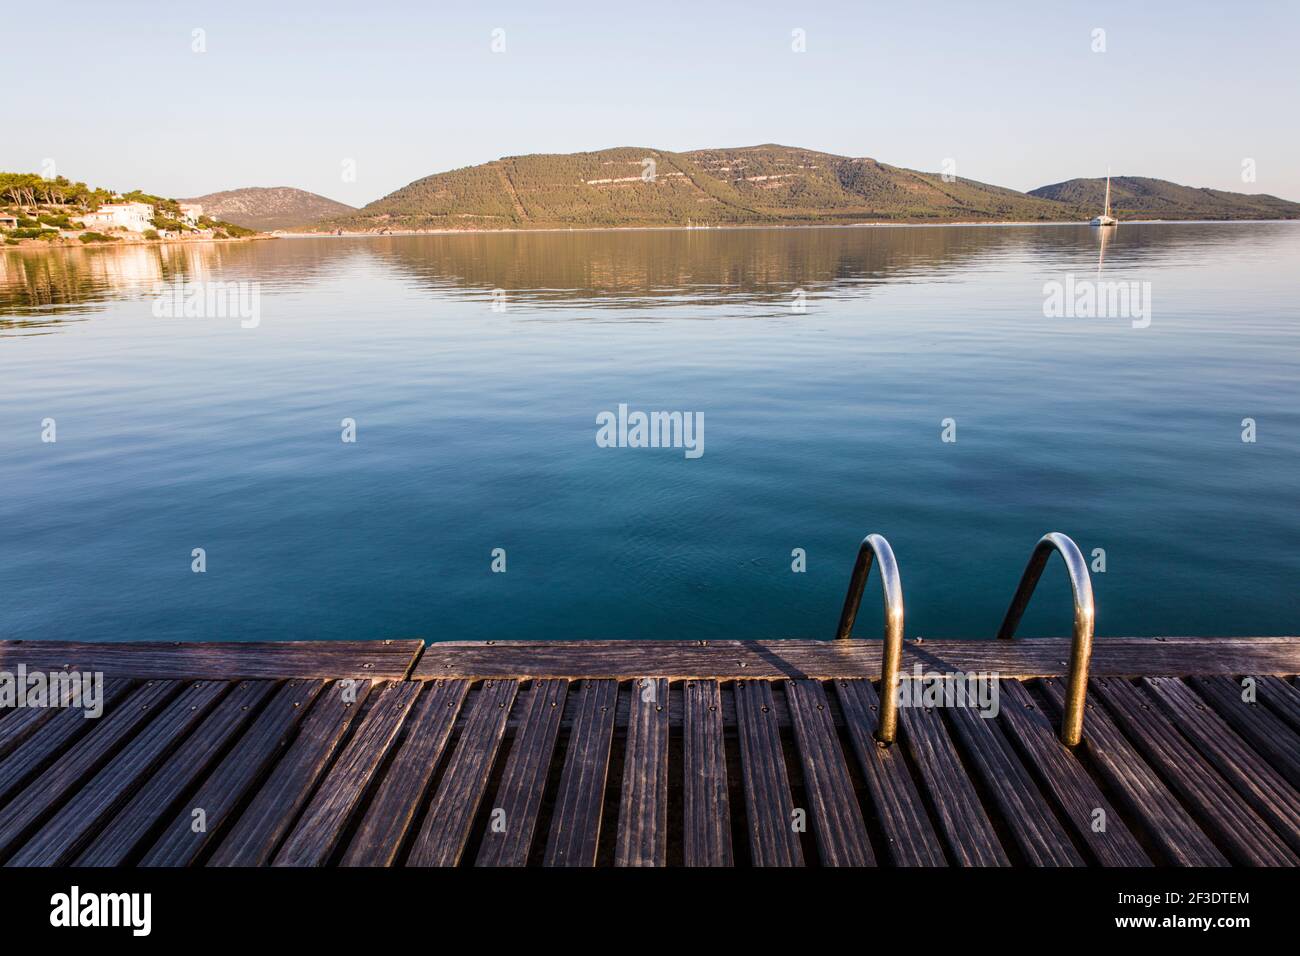 Das Porto Conte Marina befindet sich in einem Naturschutzgebiet in Porto Fertilia Alghero, Sardinien. Bild zeigt hölzerne Deckgangway mit Metallleitern Stockfoto